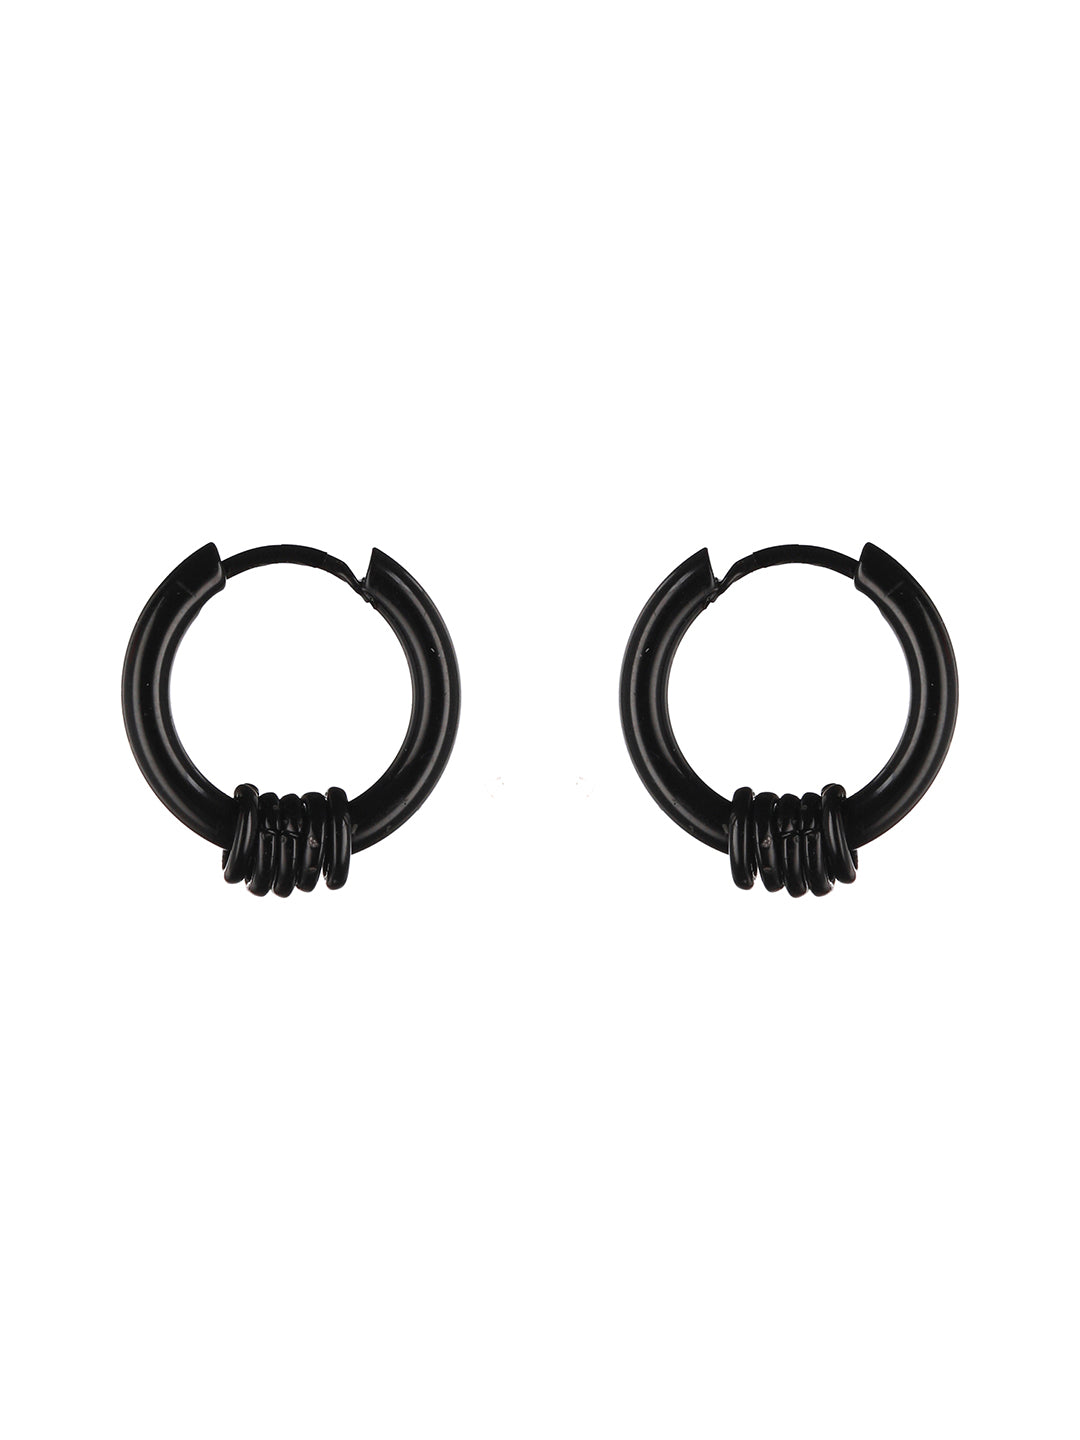 Cosmopolitan Cool Black Earrings - Jewelry by Bretta